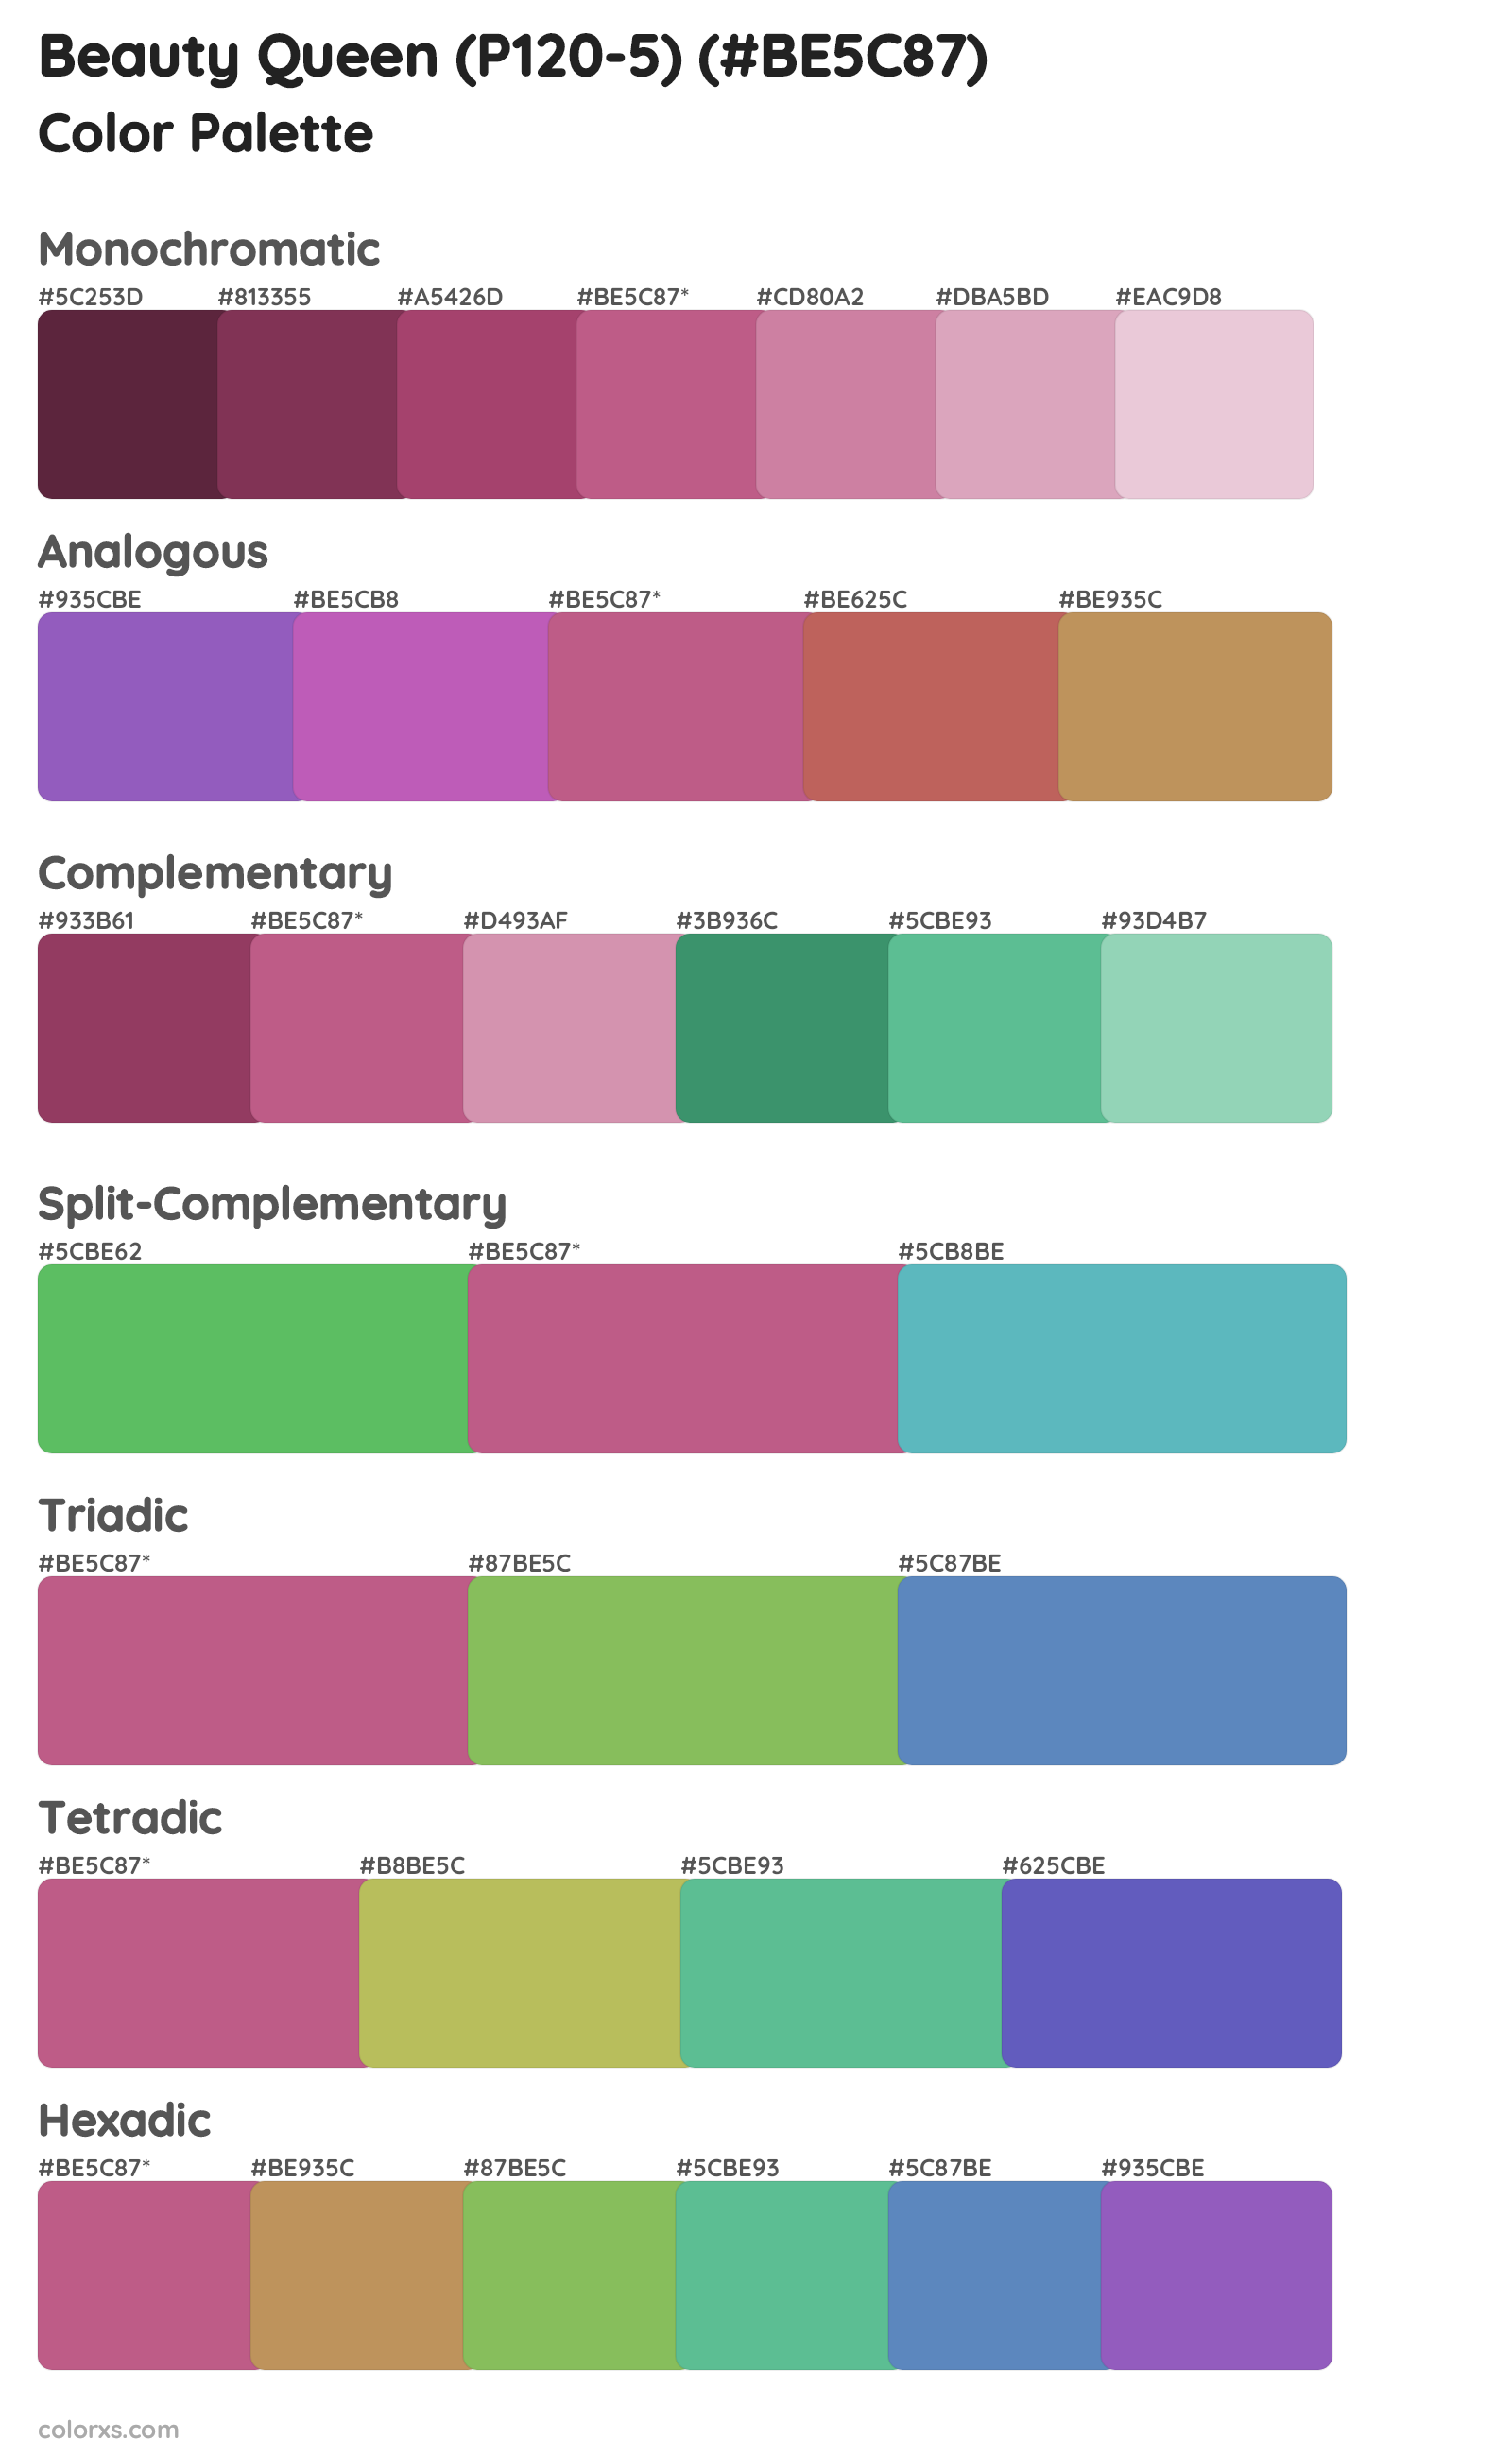 Beauty Queen (P120-5) Color Scheme Palettes